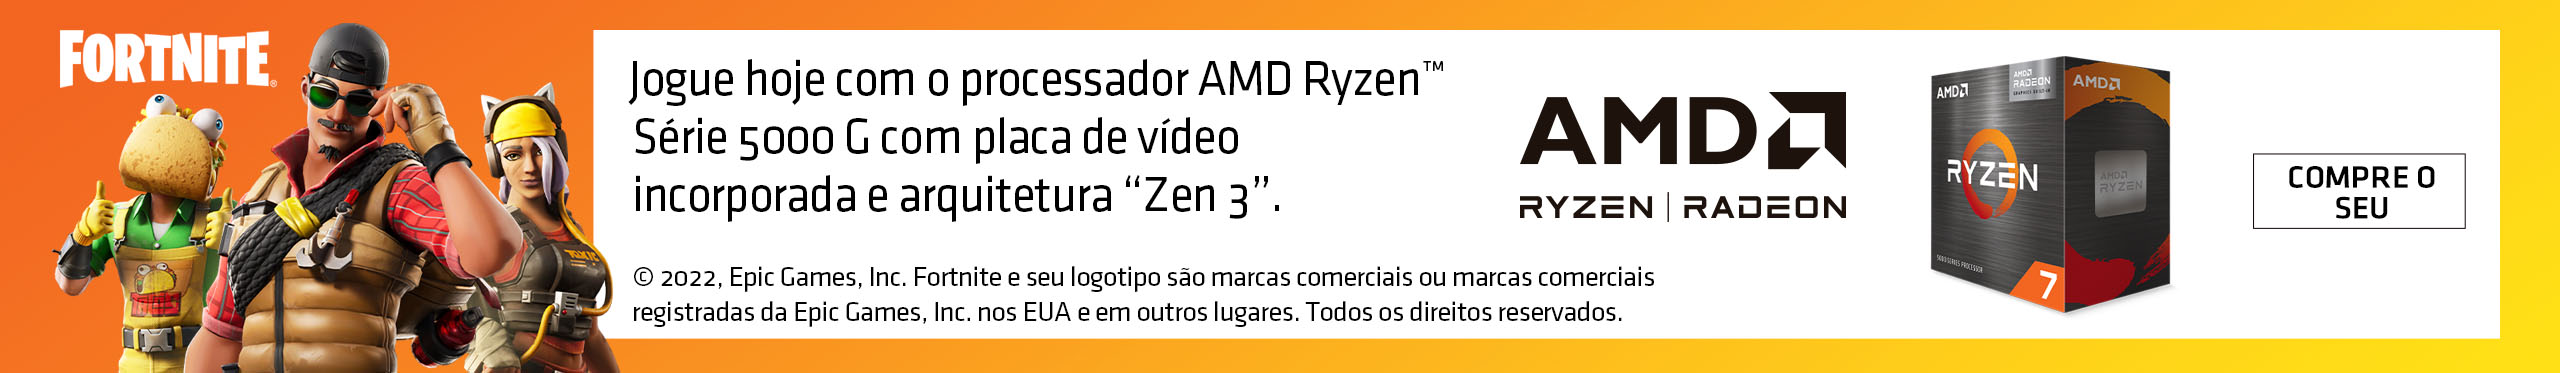 Somente com o gráfico integrado dos processadores AMD Ryzen 5000G, você roda um monte de jogos, com muita qualidade.